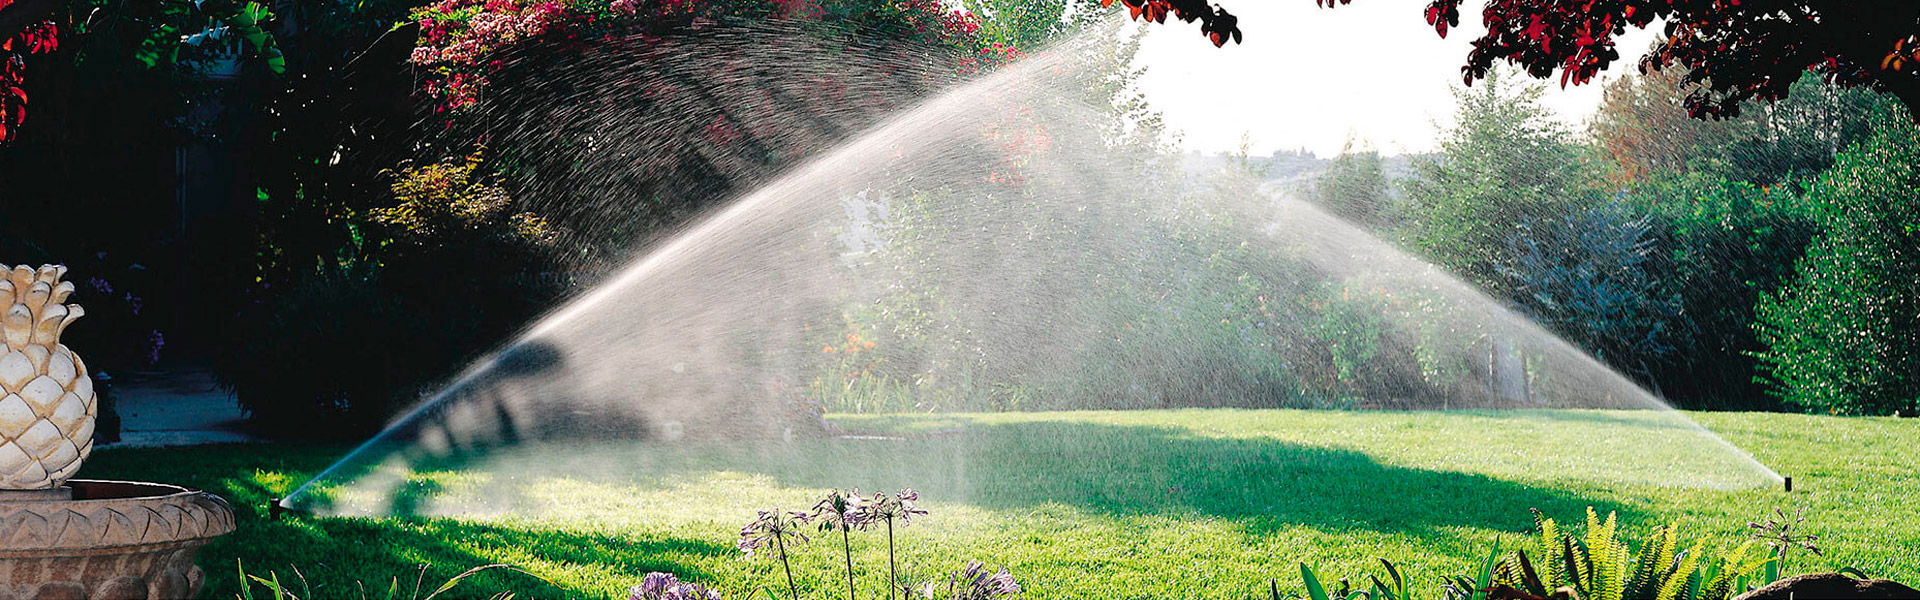 Irrigação automatizada